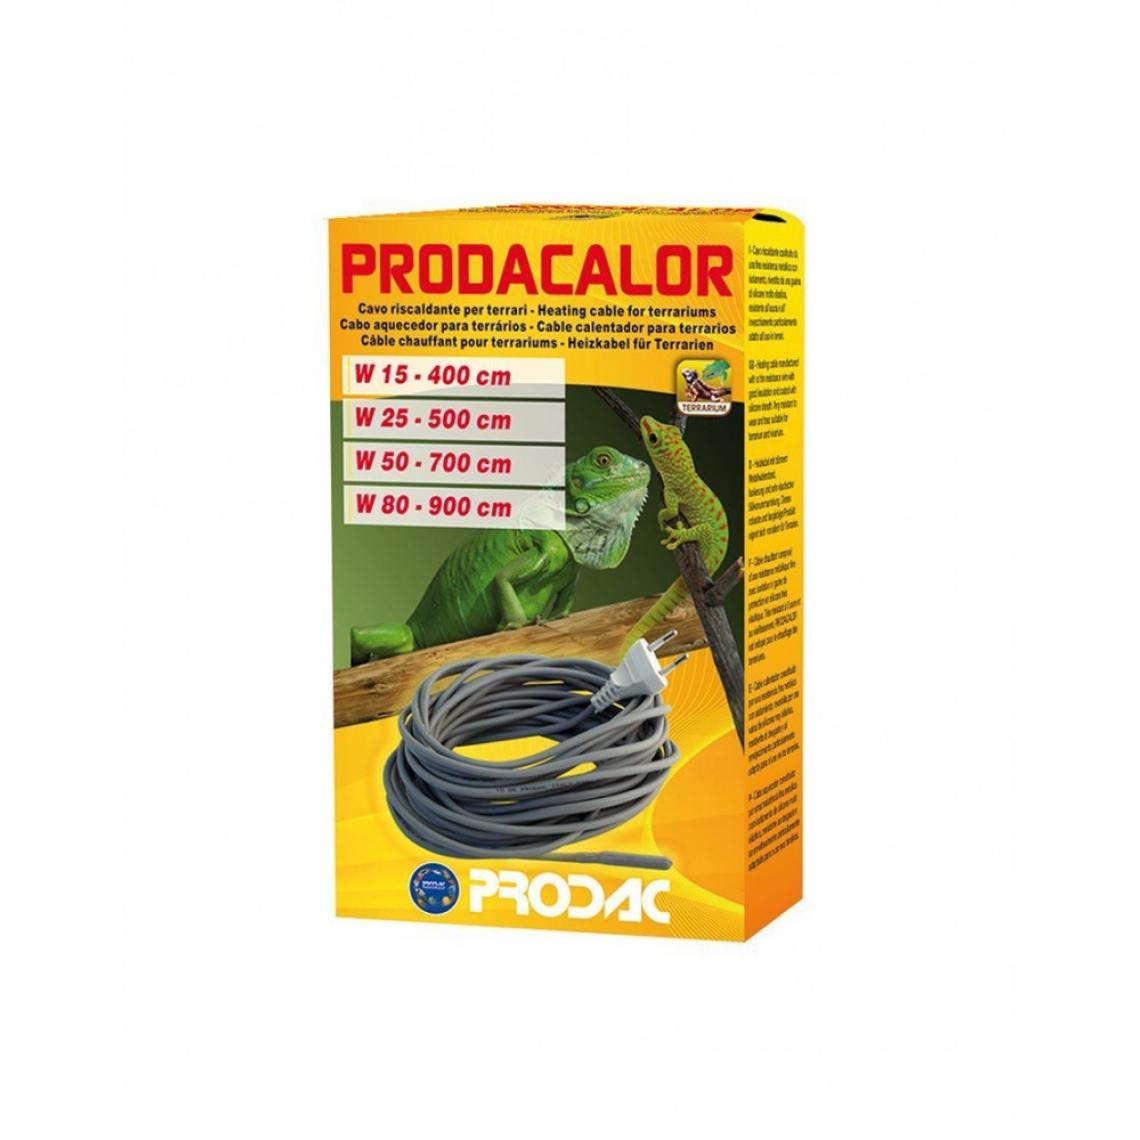 Prodac - Câble chauffant Prodacalor 700cm de long - 50W - Accessoires de terrarium